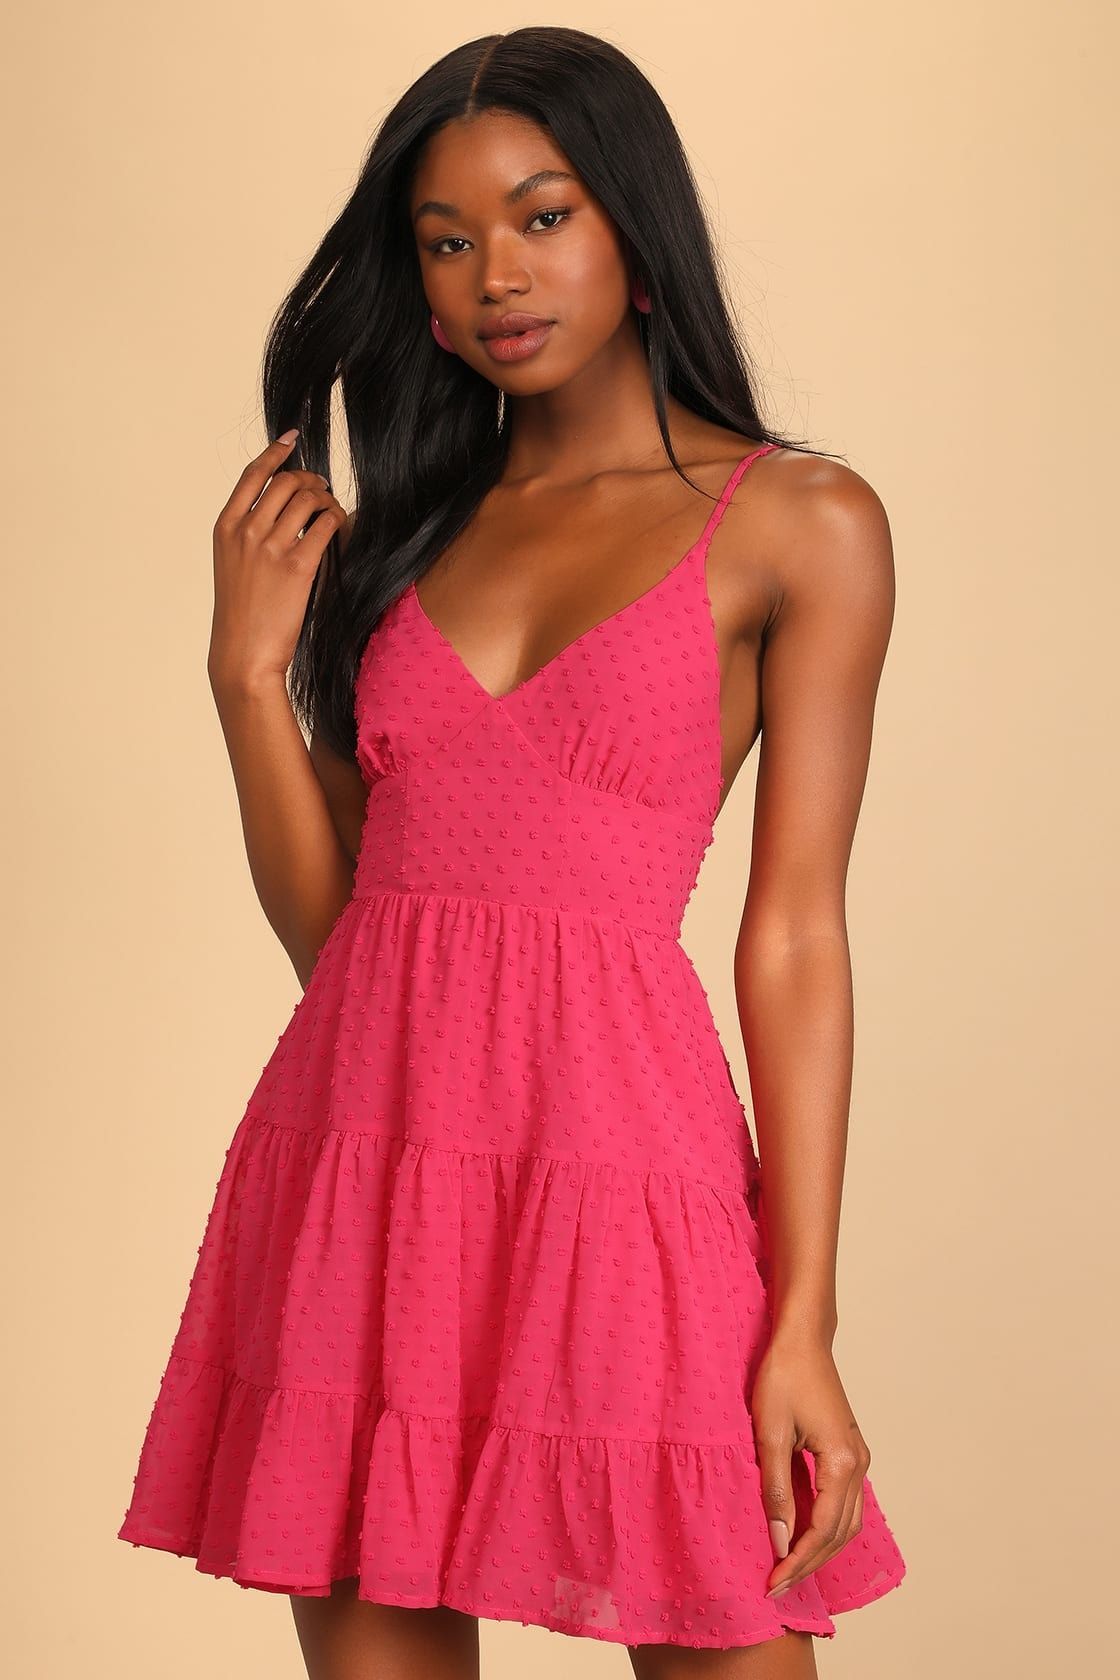 pink spring dress